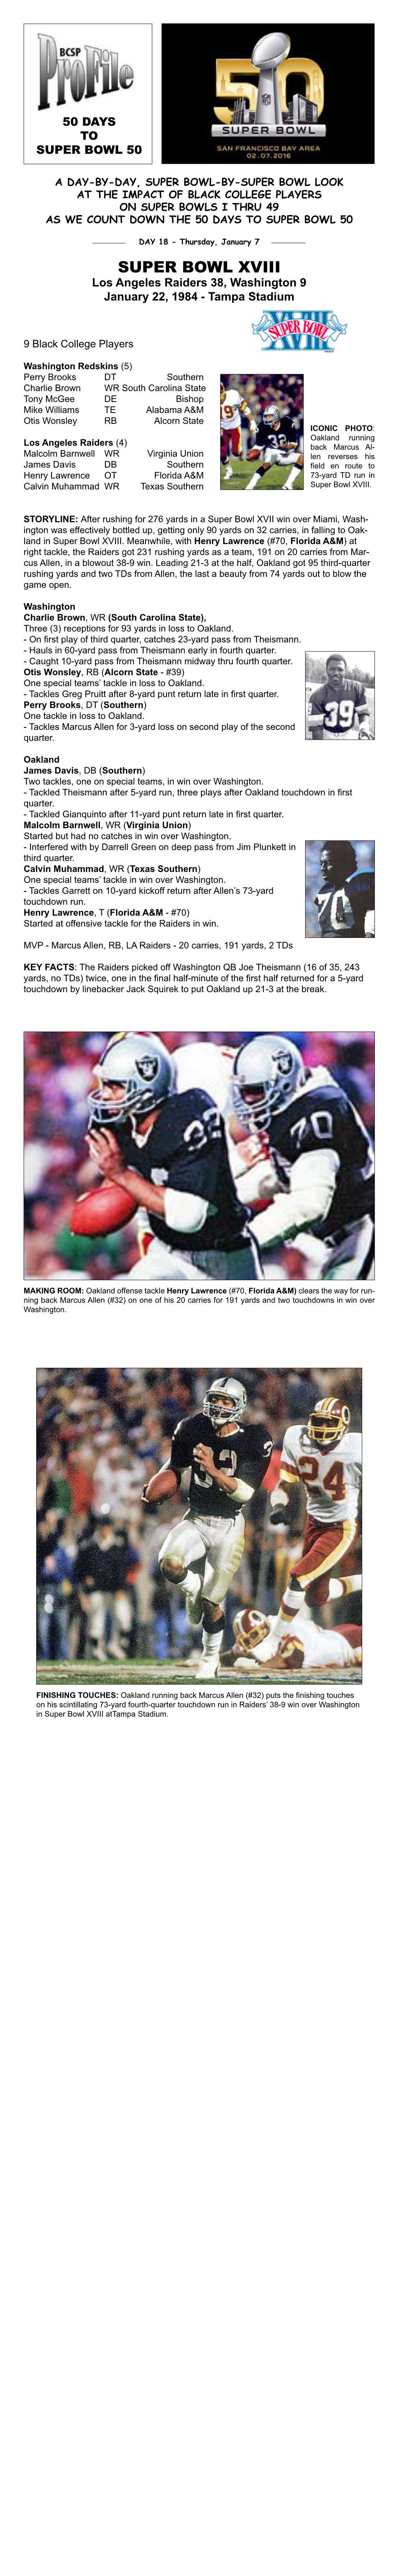 Super Bowl XVIII Los Angeles Raiders 38, Washington 9 January 22, 1984 - Tampa Stadium